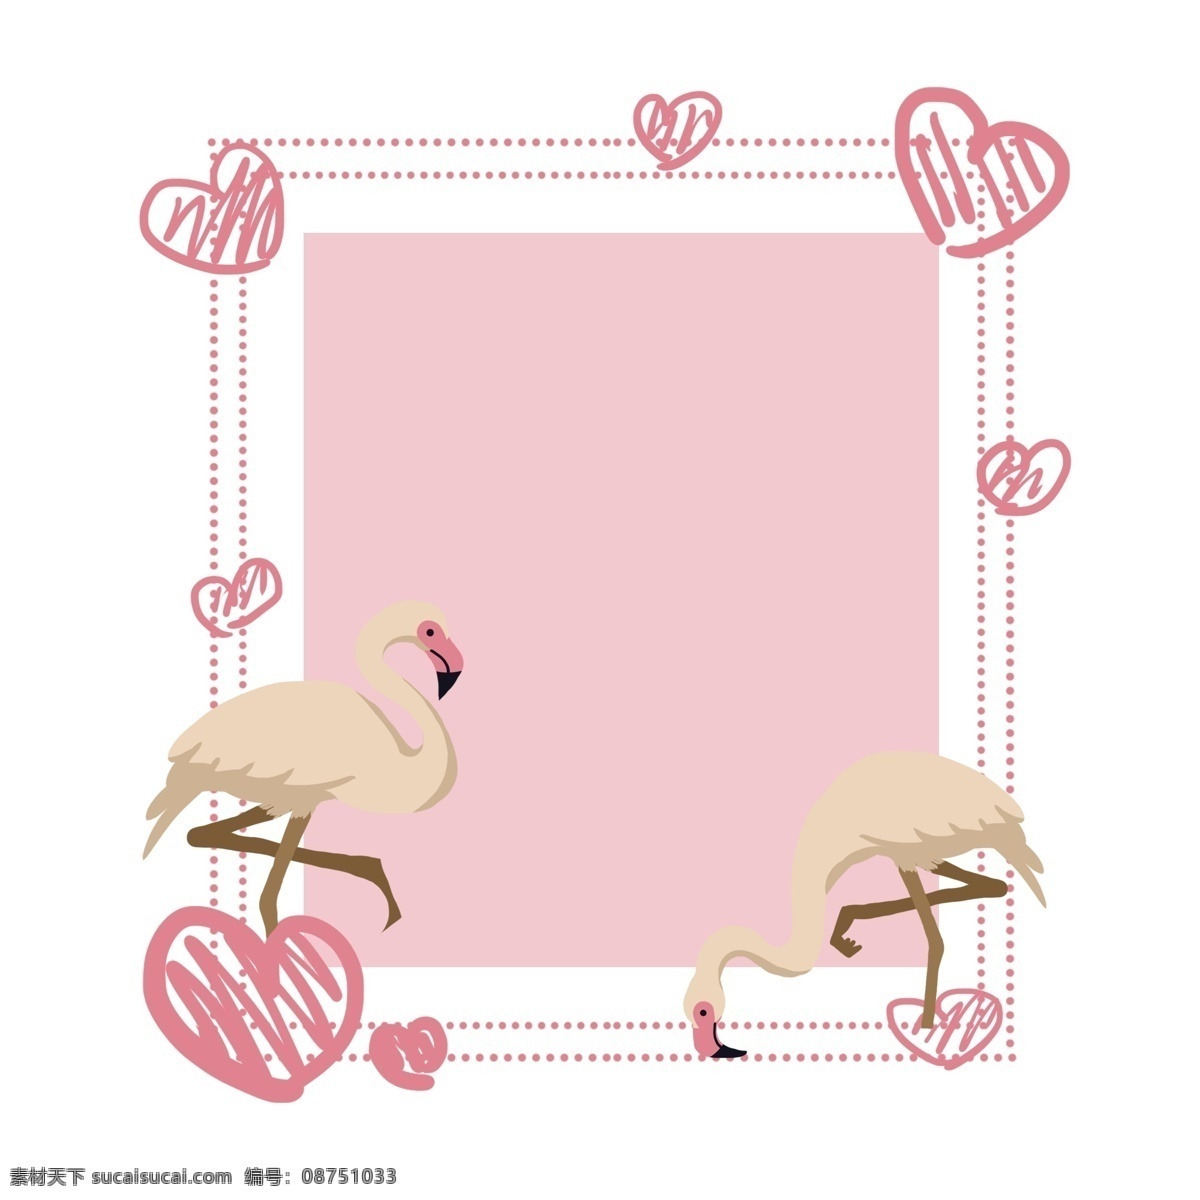 粉红色 动物 边框 手绘的 卡通的 手绘火烈鸟